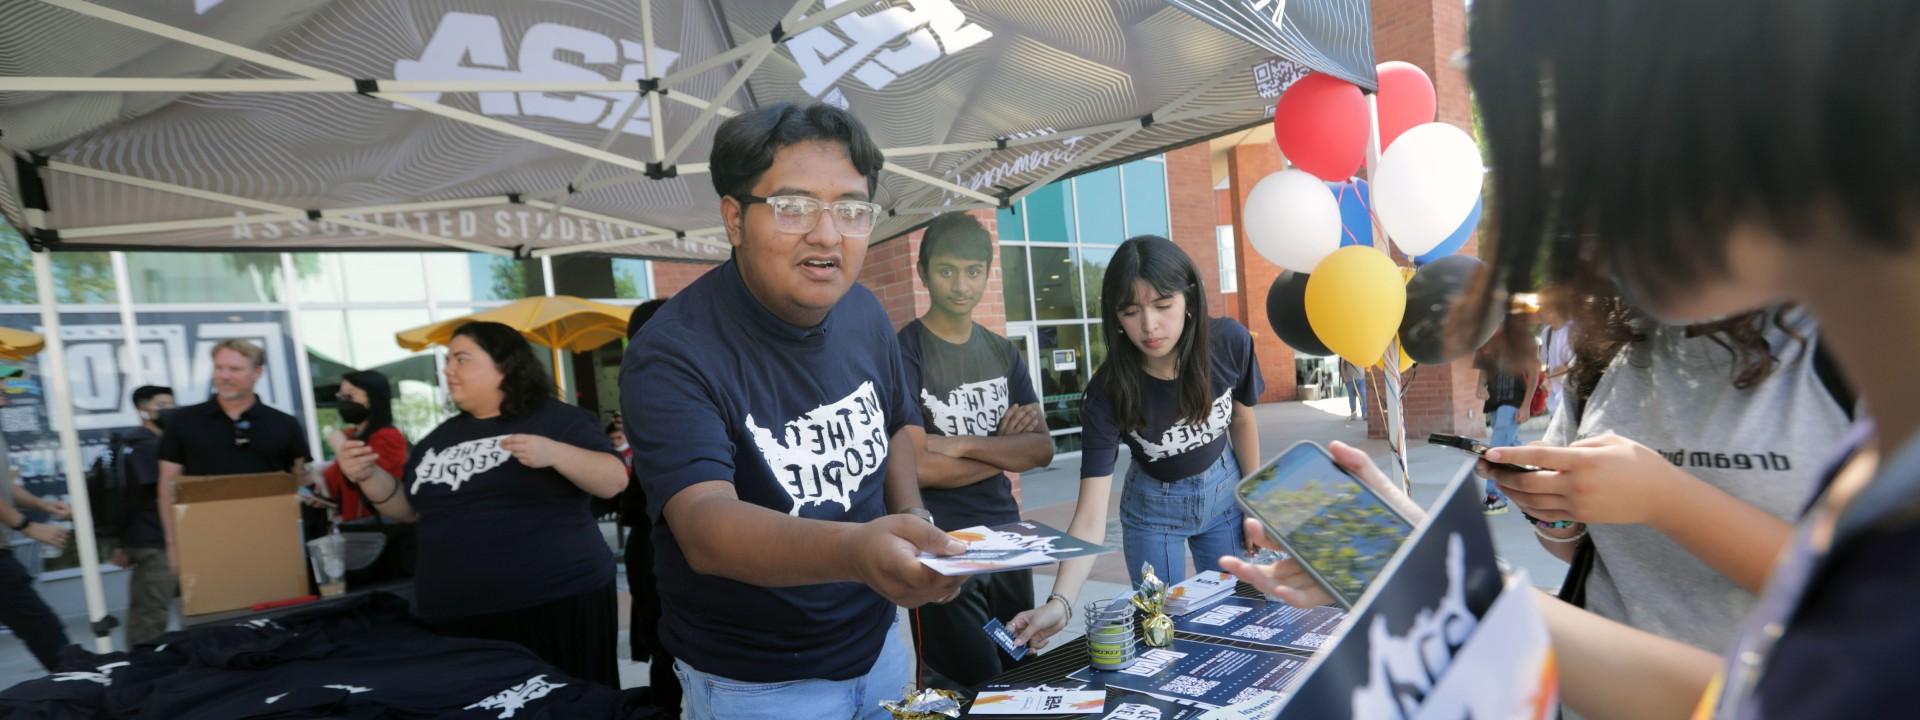 一名学生穿着印有“我们人民”字样的t恤，站在联合学生公司下面.，林冠递给学生一本小册子.